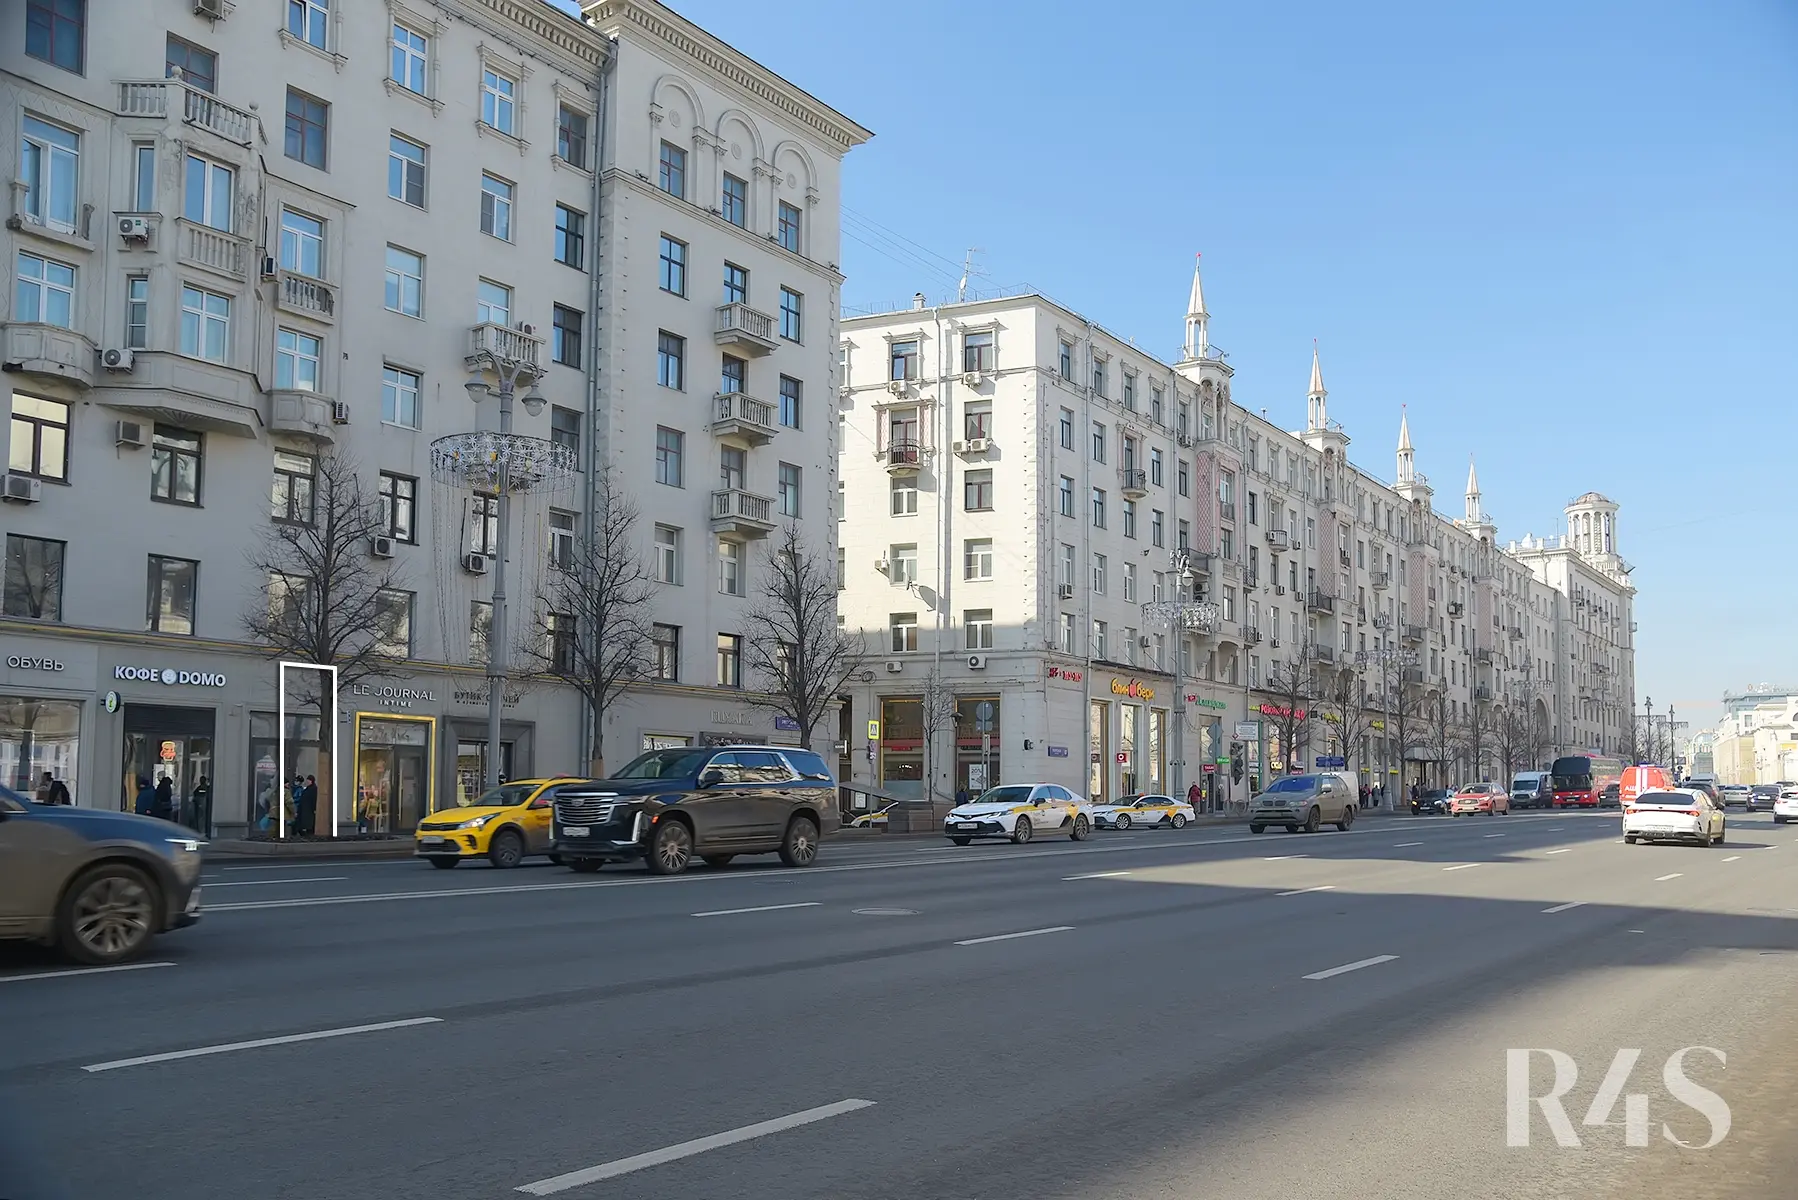 Аренда торгового помещения площадью 9.3 м2 в Москве: Тверская, 15 R4S | Realty4Sale